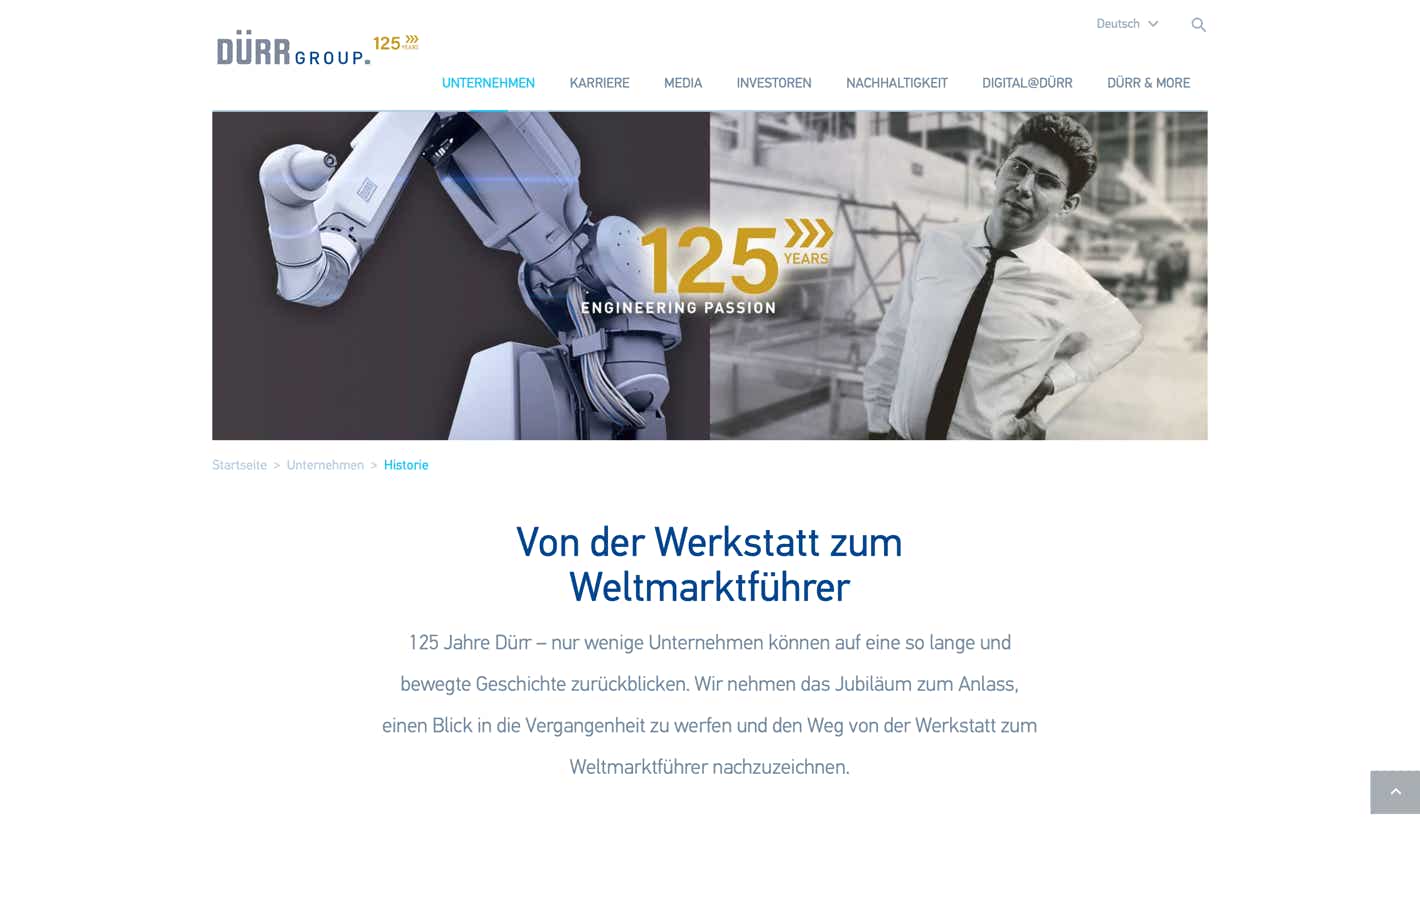 Header für die Website der Dürr Group mit einer Gegenüberstellung eines Roboters und Heinz Dürr in jungen Jahren.